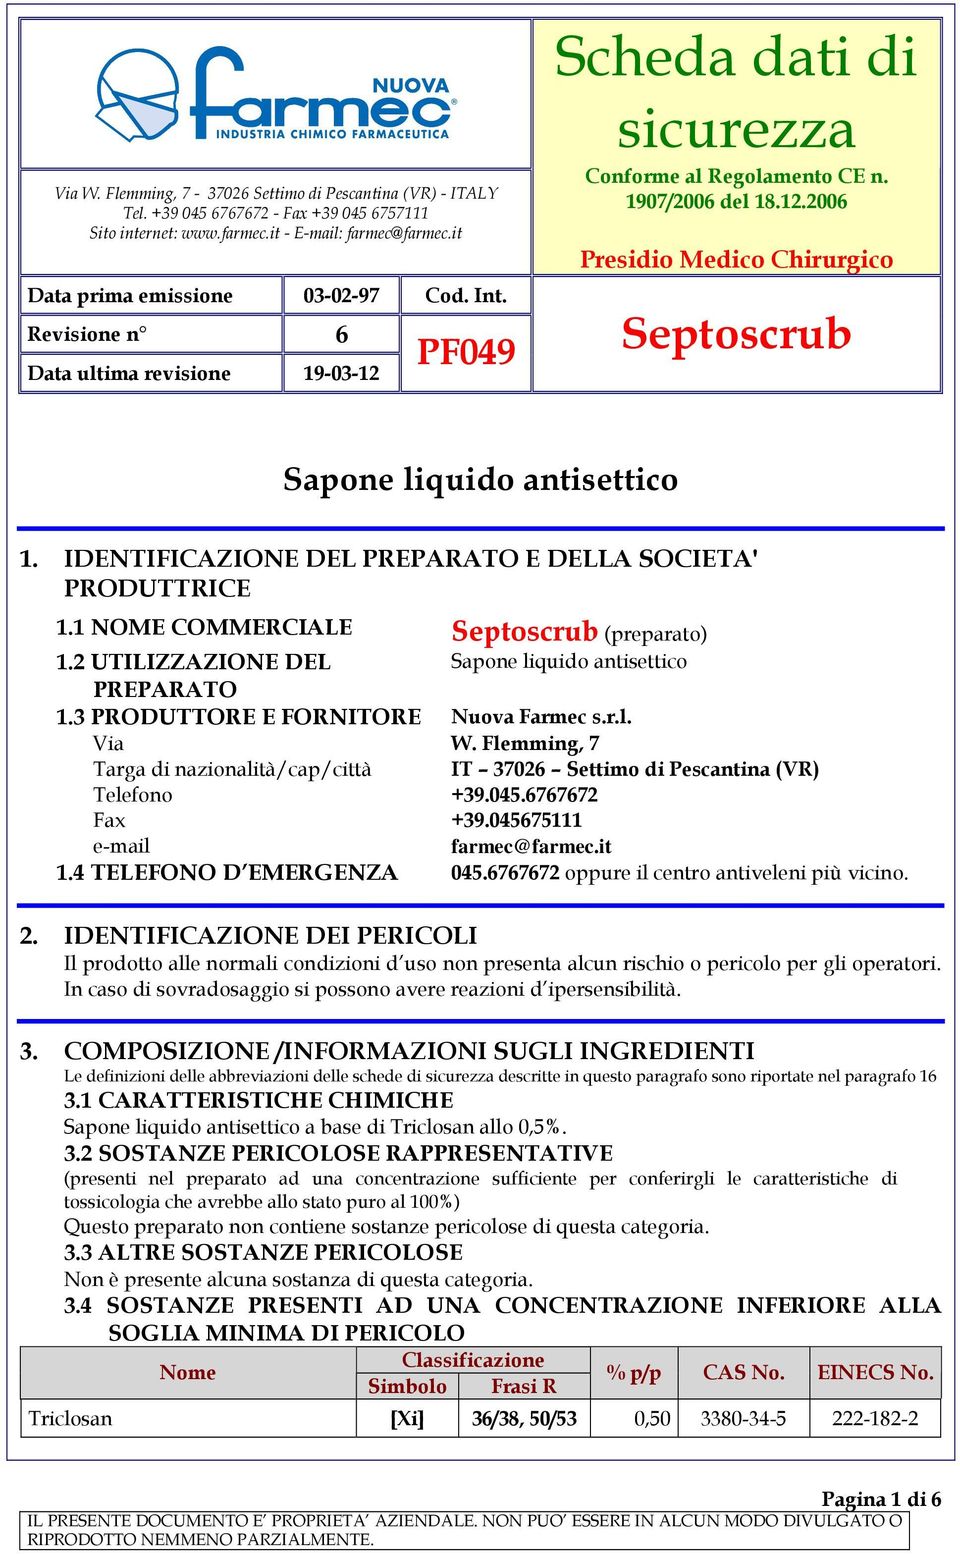 IDENTIFICAZIONE DEL PREPARATO E DELLA SOCIETA' PRODUTTRICE 1.1 NOME COMMERCIALE Septoscrub (preparato) 1.2 UTILIZZAZIONE DEL Sapone liquido antisettico PREPARATO 1.